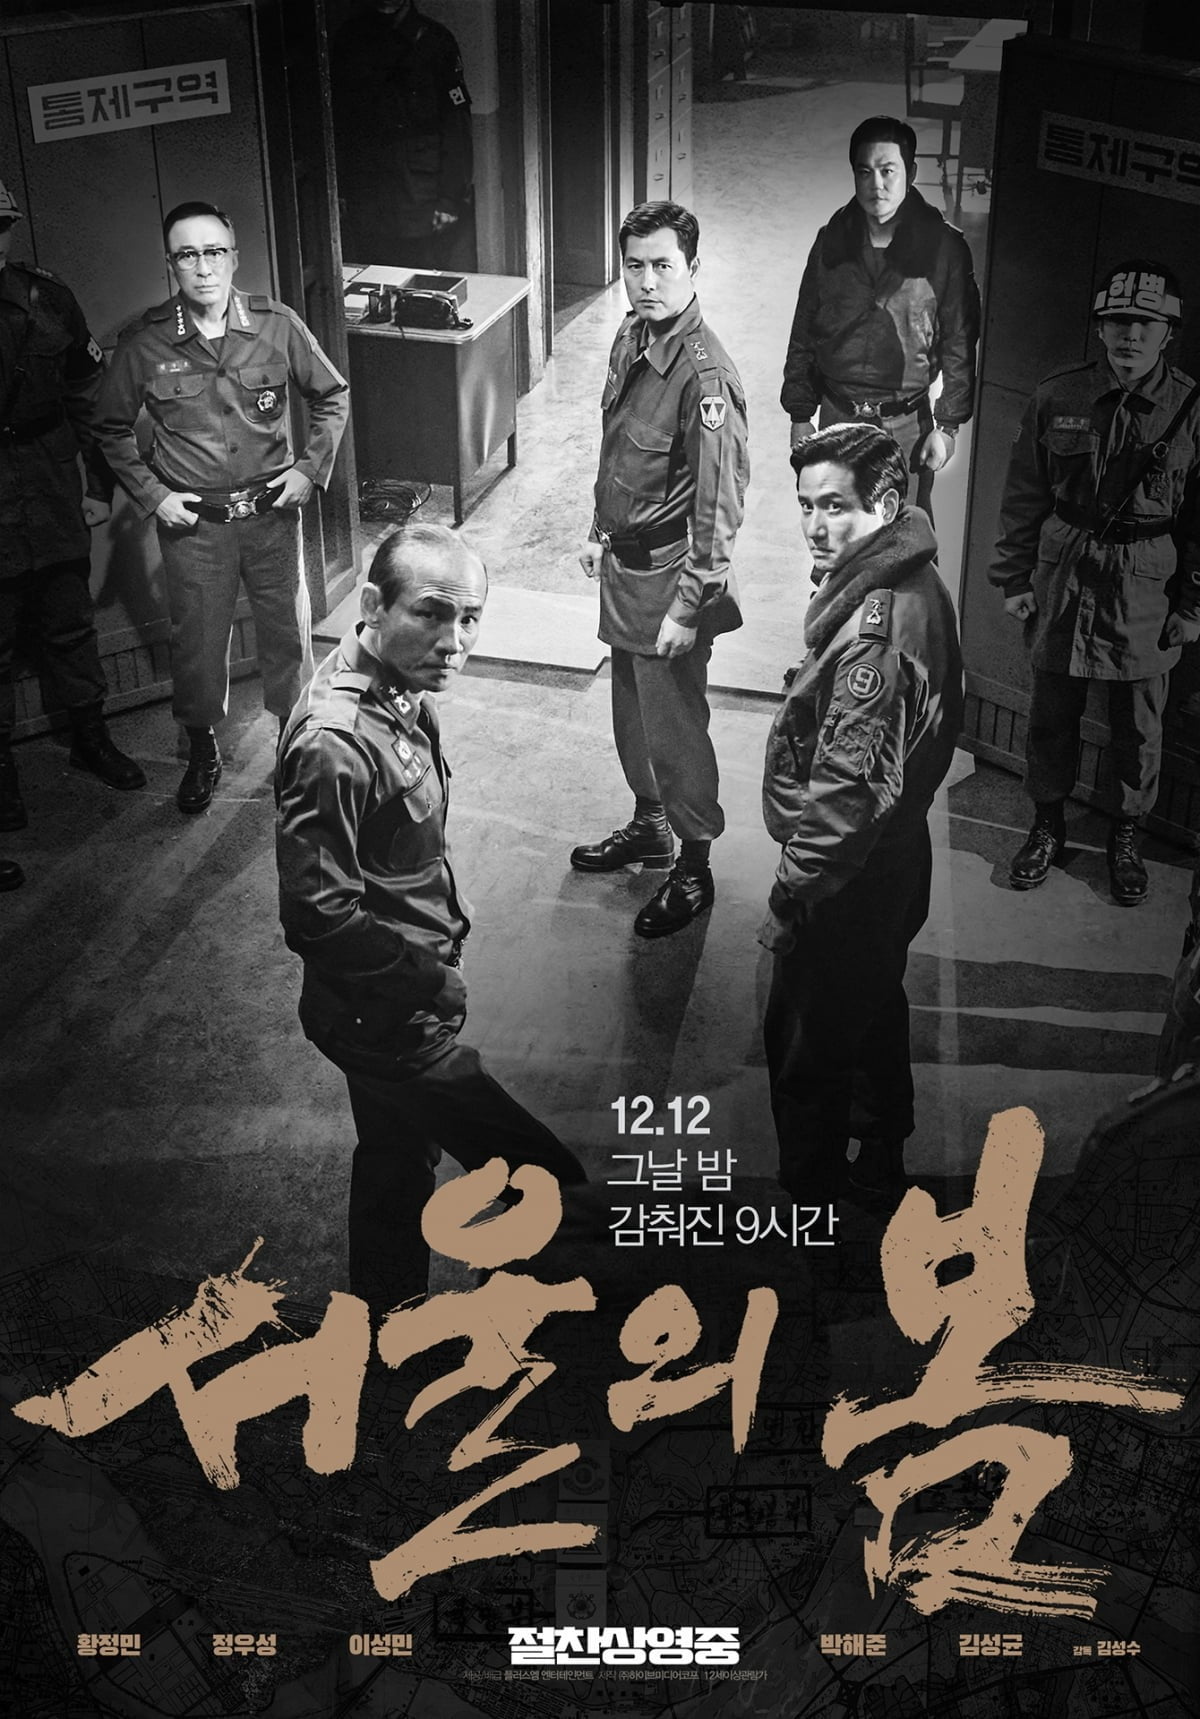 「ソウルの春」12月韓国映画売上高歴代2位